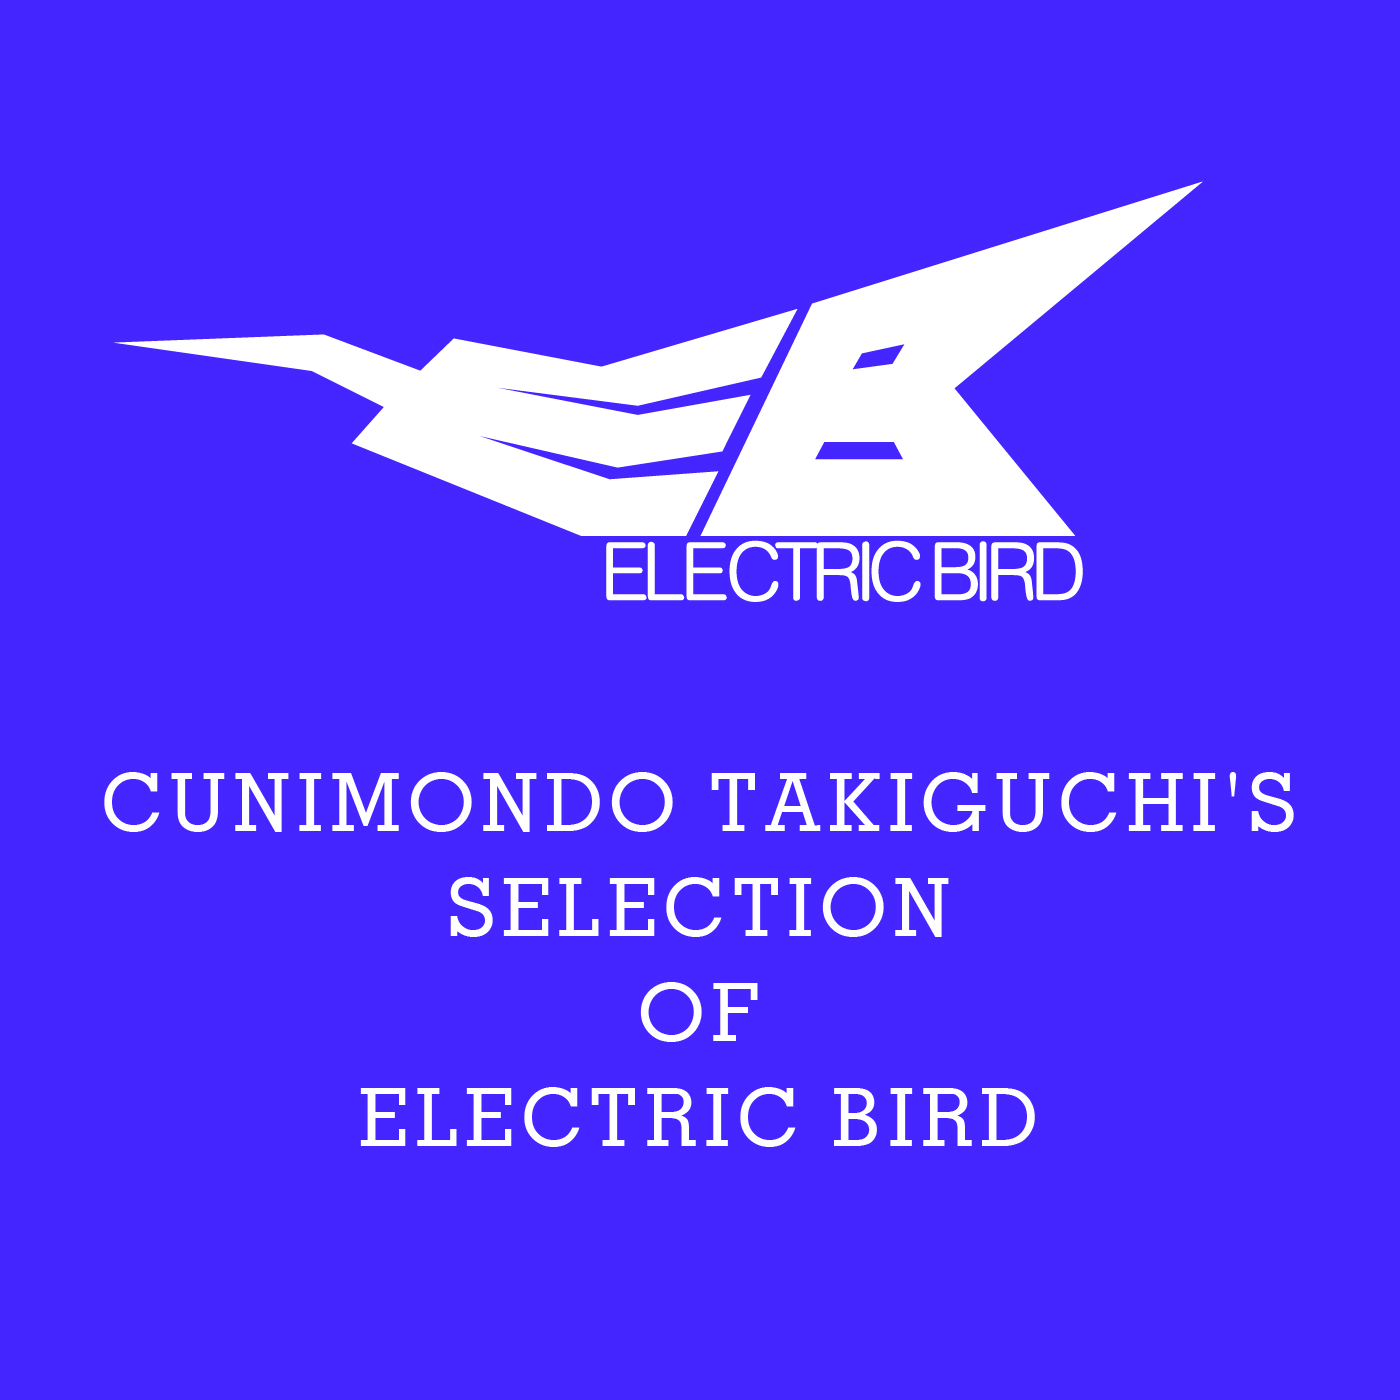 ELECTRIC BIRD PLAYLIST BY C.TAKIGUCHI